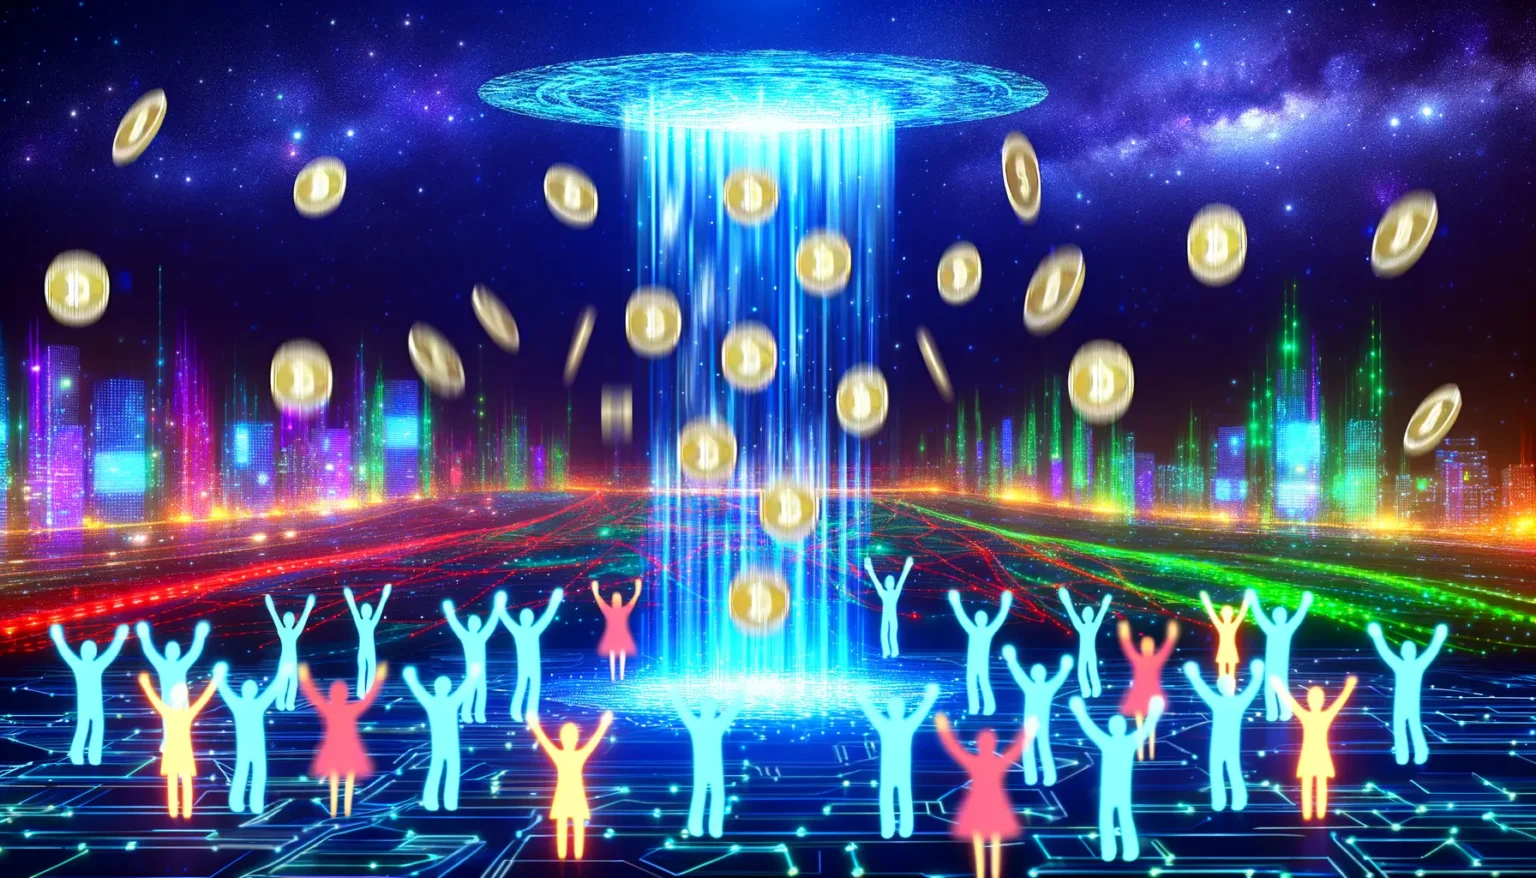 Digitale Darstellung einer futuristischen Stadt mit leuchtenden Neonfarben und einer Gruppe von stilisierten menschlichen Figuren, die Arme zum Himmel heben, als ob sie fallende Münzen auffangen würden, die von einer großen, scheibenförmigen Lichtquelle am Nachthimmel herabströmen.